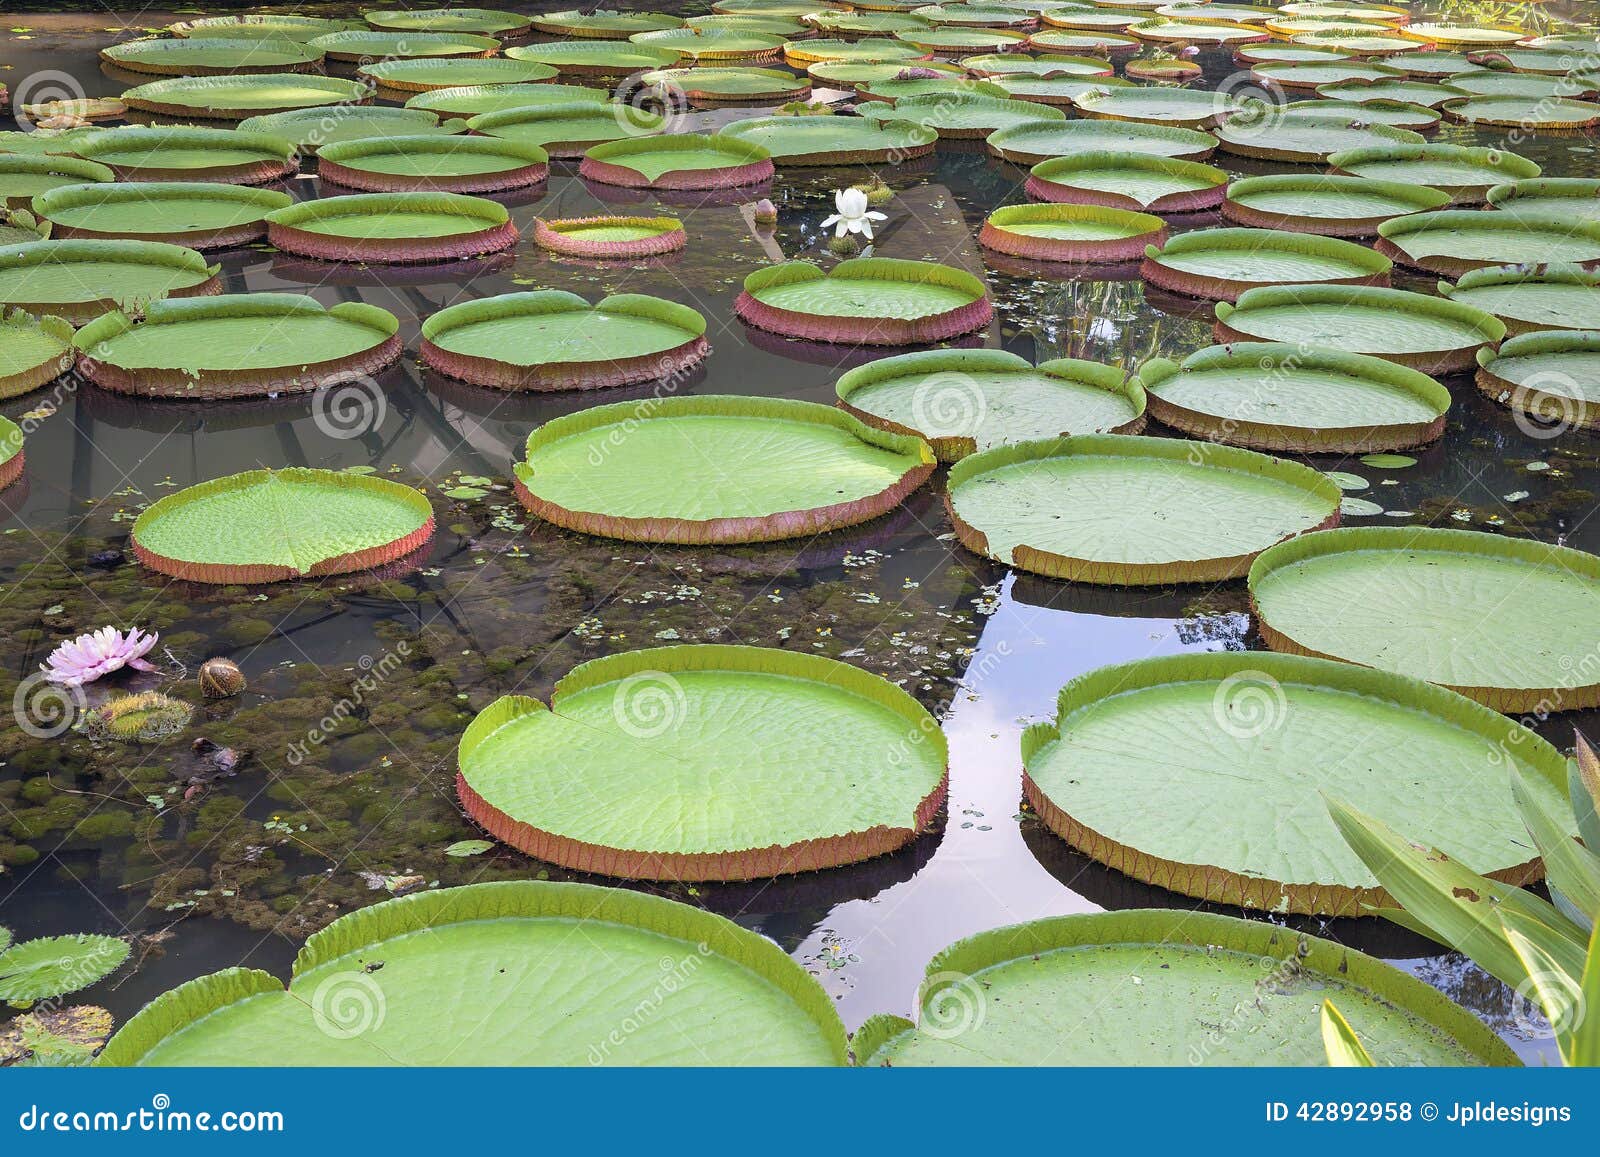 aqua lily pad float